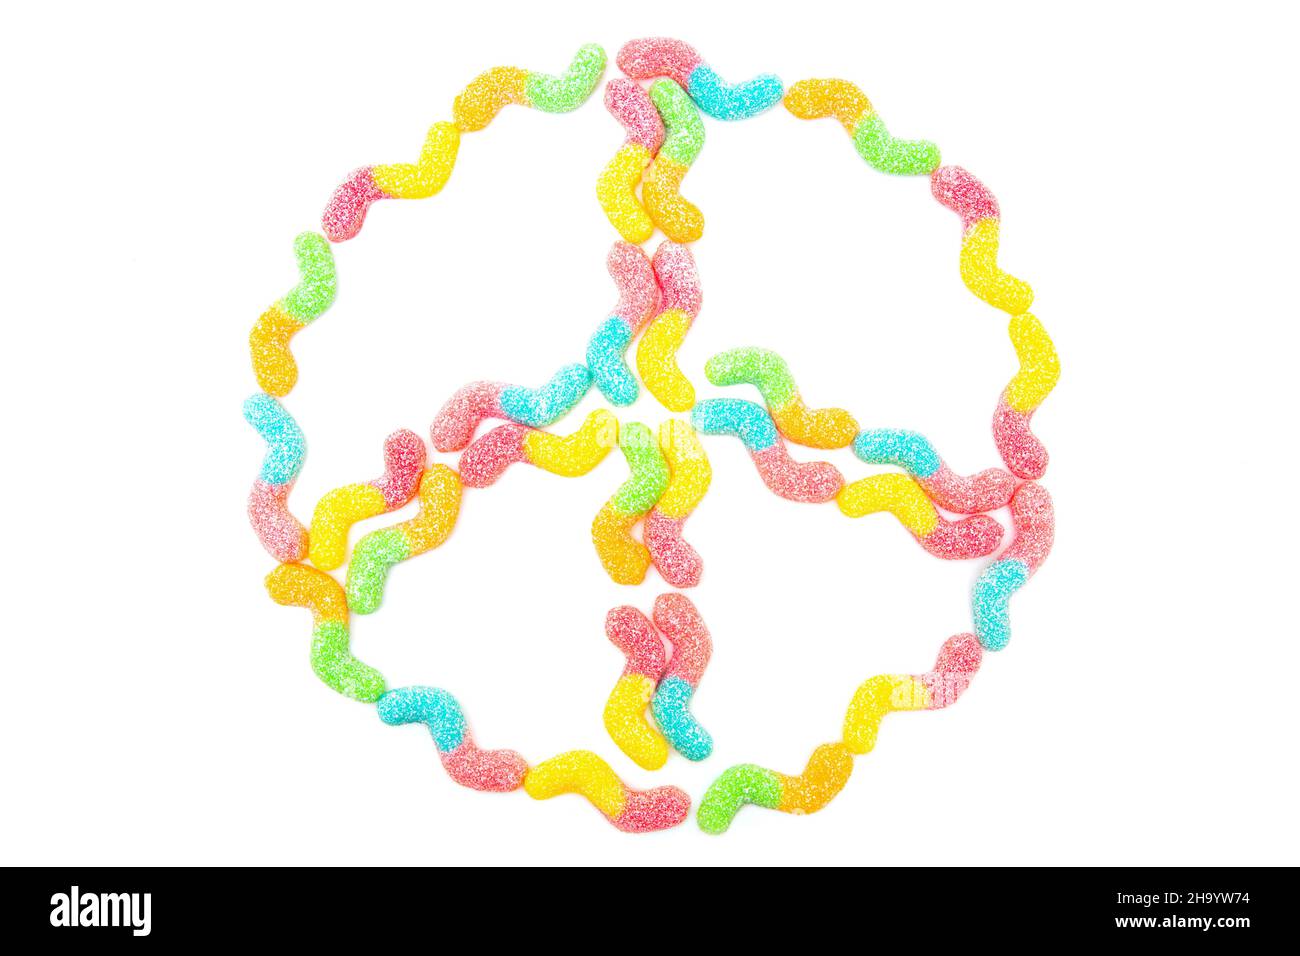 Friedenssymbol aus mehrfarbigen, mit Zucker überzogenen Gummiwürmern, die auf Weiß isoliert sind. Konzept der Antikriegsbewegung. Stockfoto